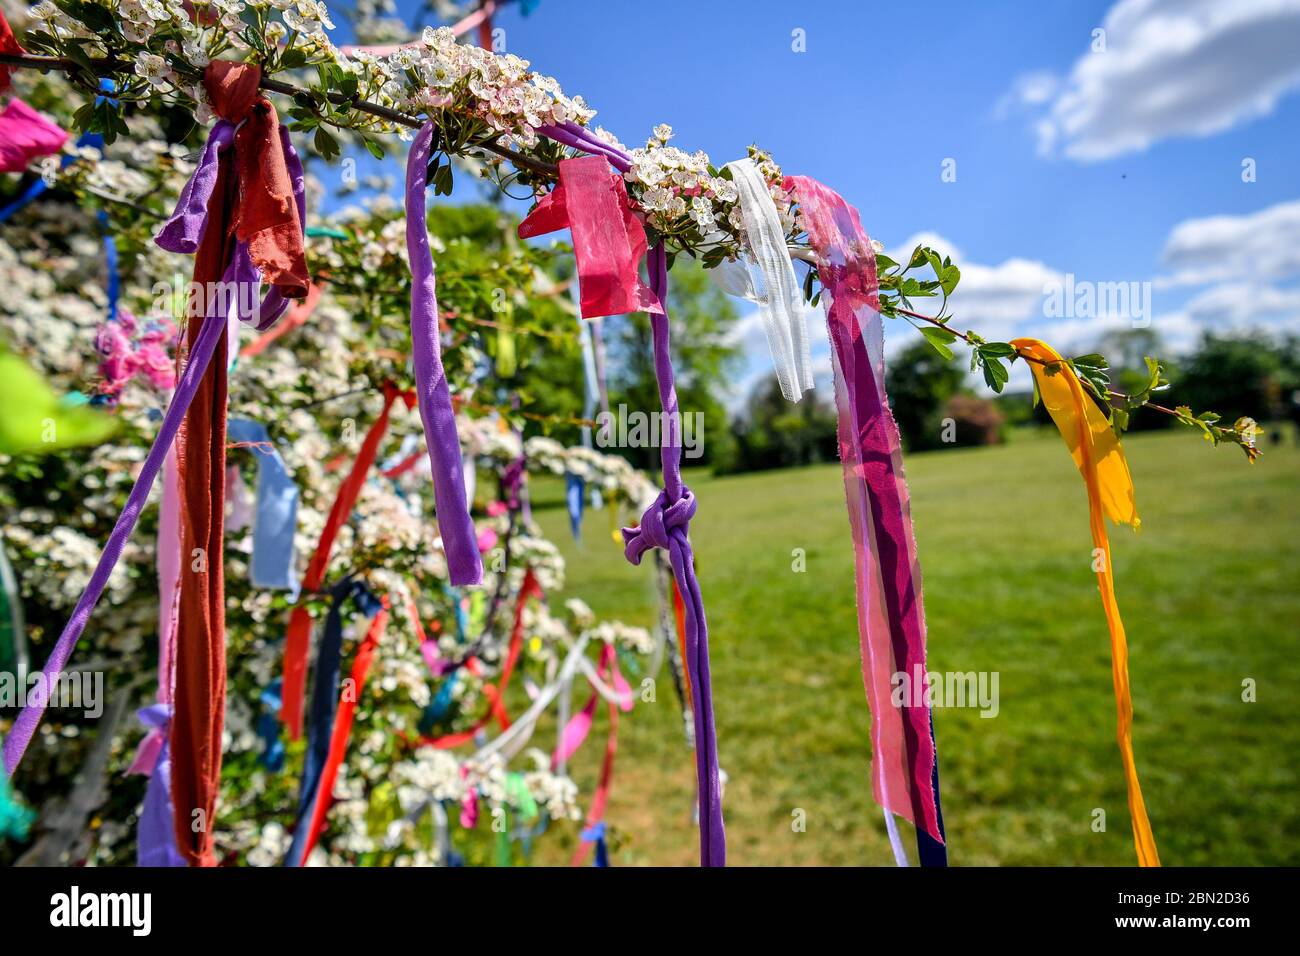 Rubans attachés à un arbre qui souhaite le plus grand espoir, également ornés de messages et de poèmes, qui sont apparus sur Clifton Downs, Bristol, où les messages du coronavirus et les sentiments d'espoir et de positivité ont été liés à l'arbre par des rubans colorés. Banque D'Images